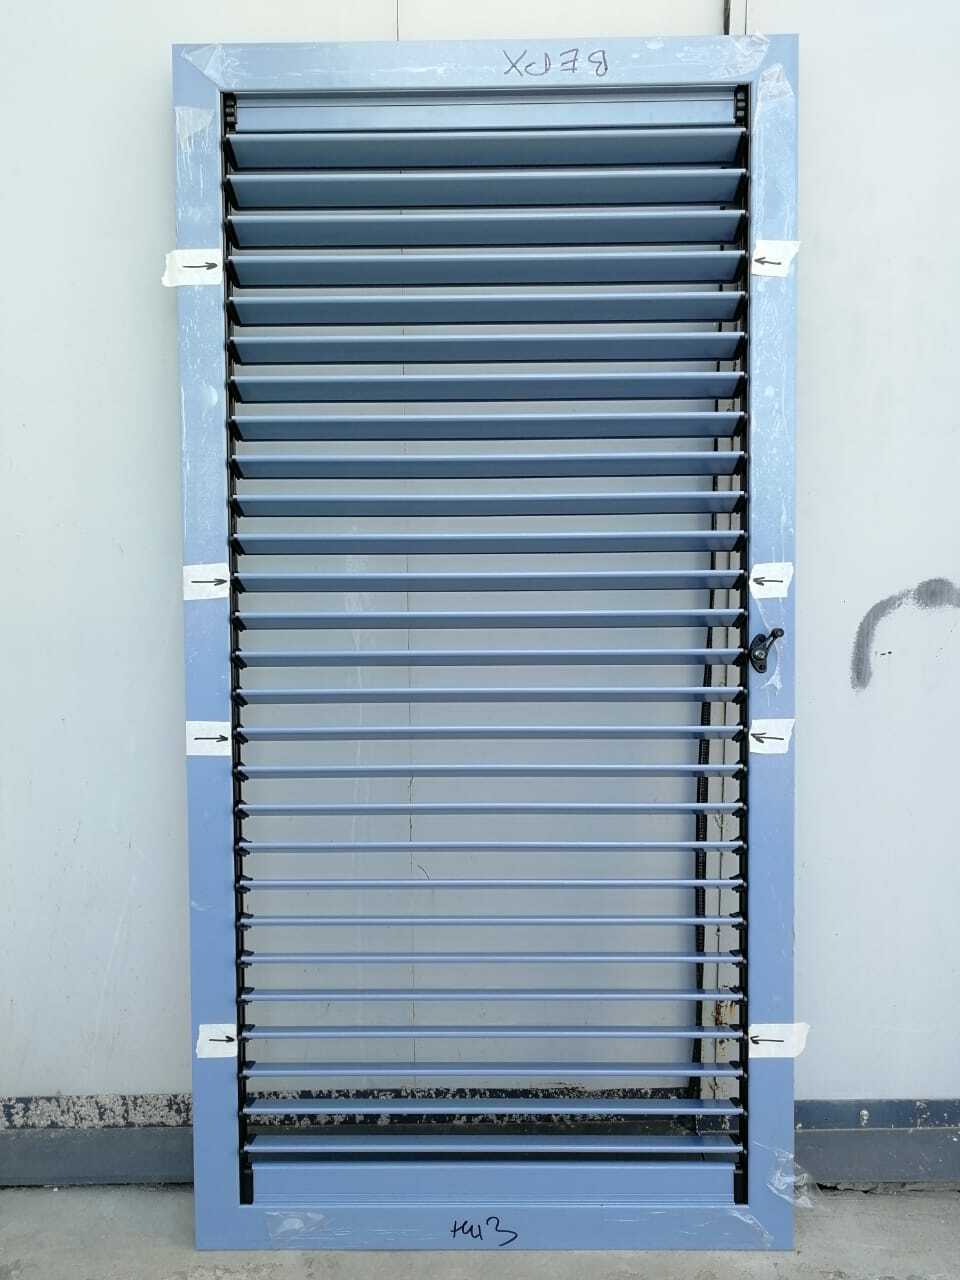 Теперь вентиляционную решетку на лоджии можно закрыть. Также делаем утепление вентиляционных решеток на балконе в г.Екатеринбург.